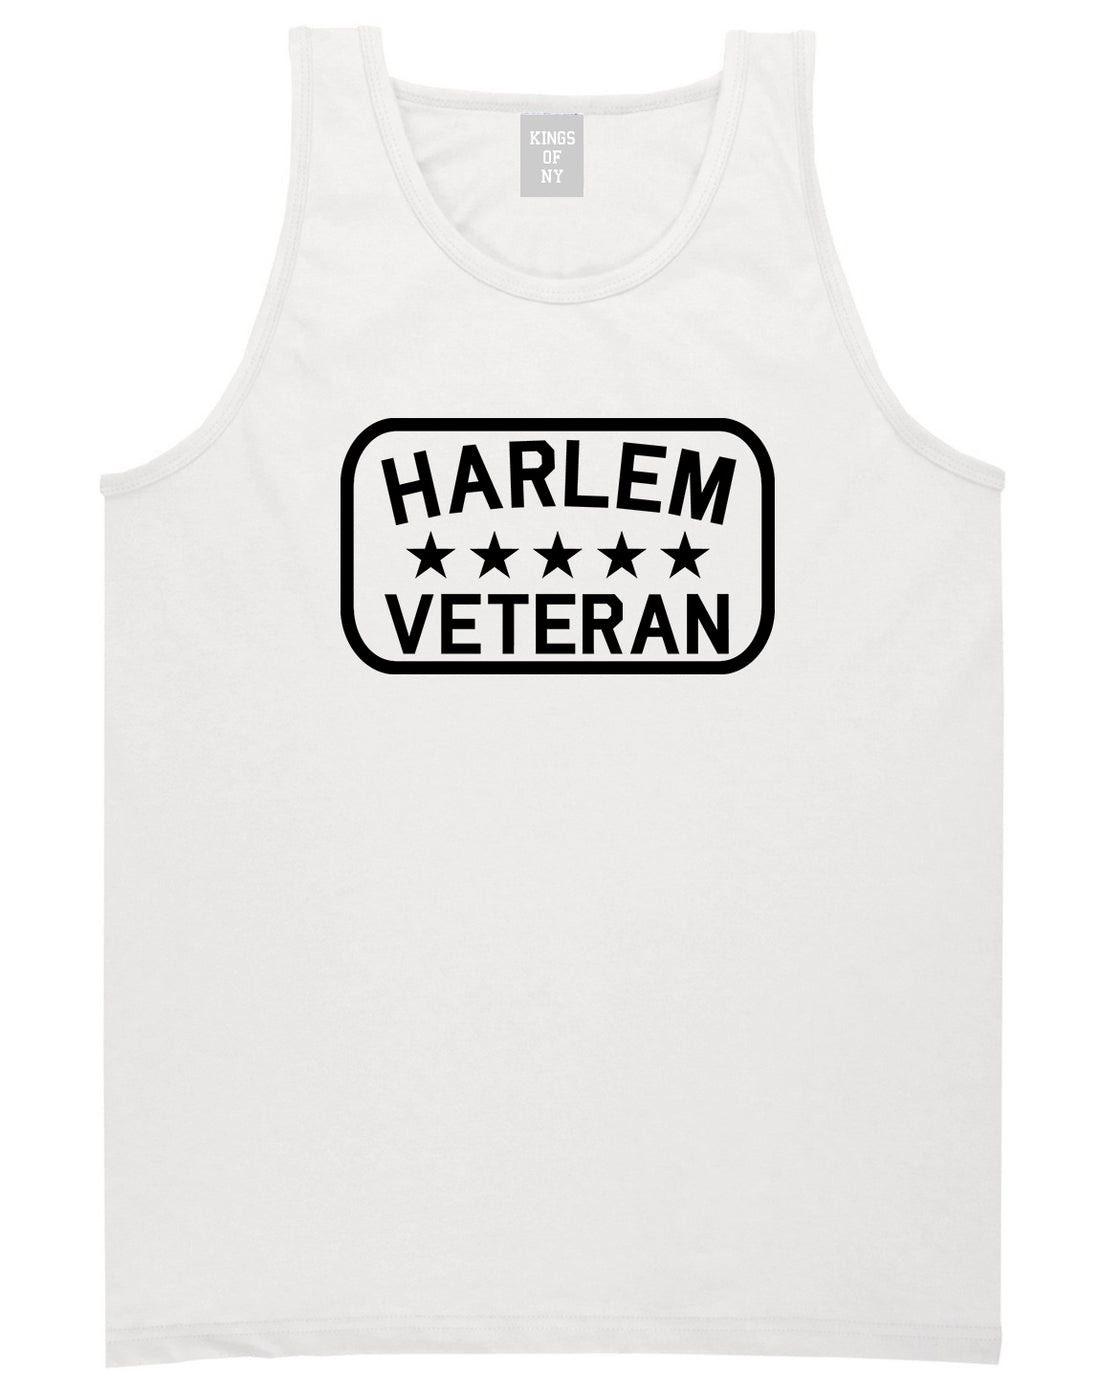 Harlem Veteran Mens Tank Top Shirt White